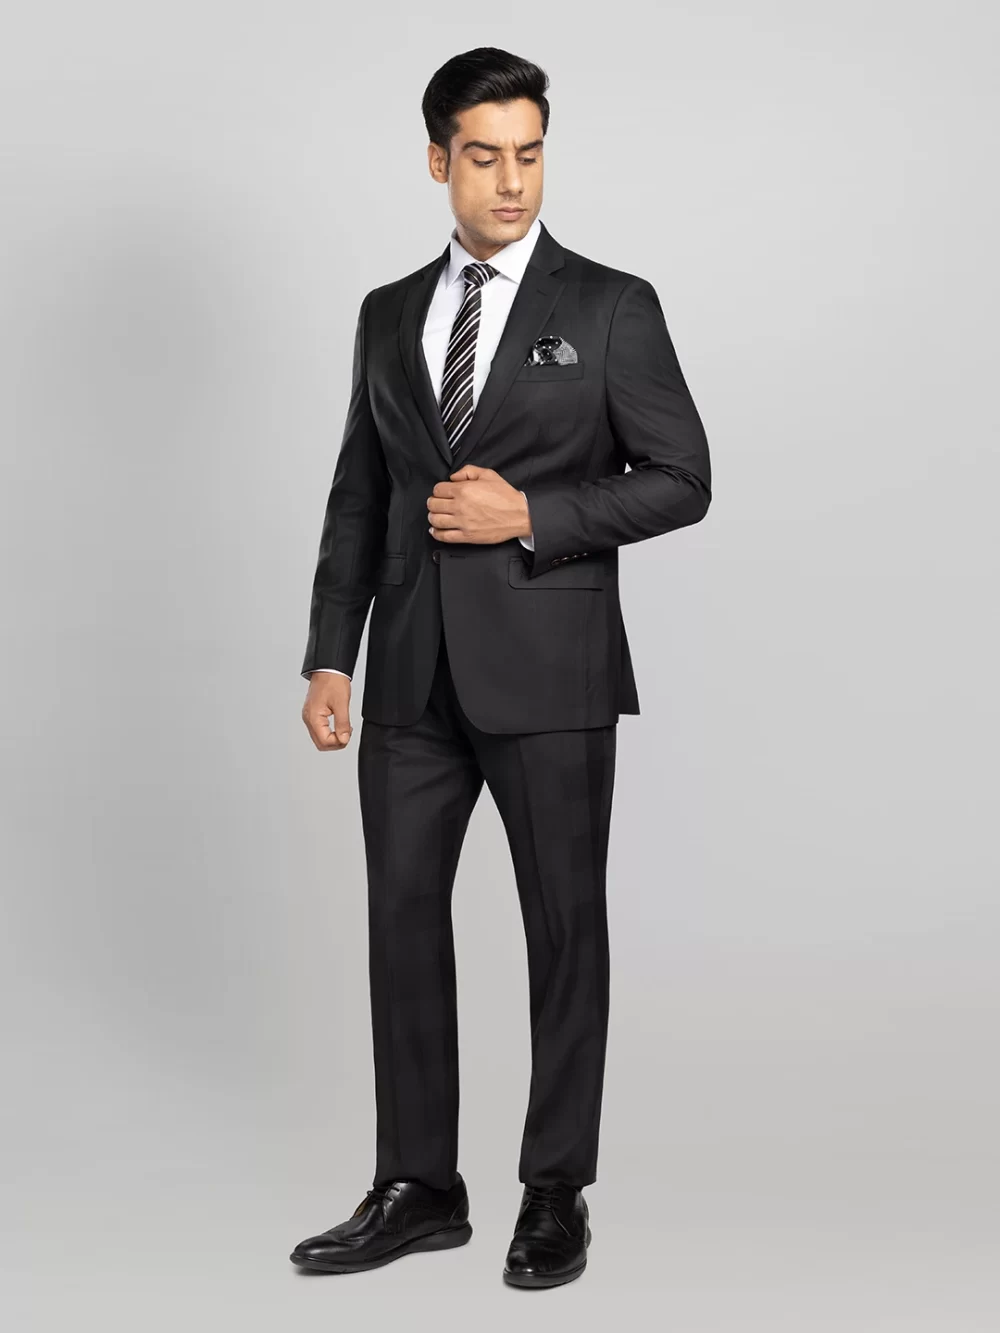 Men's 2 piece Checkered Business Suit - Black